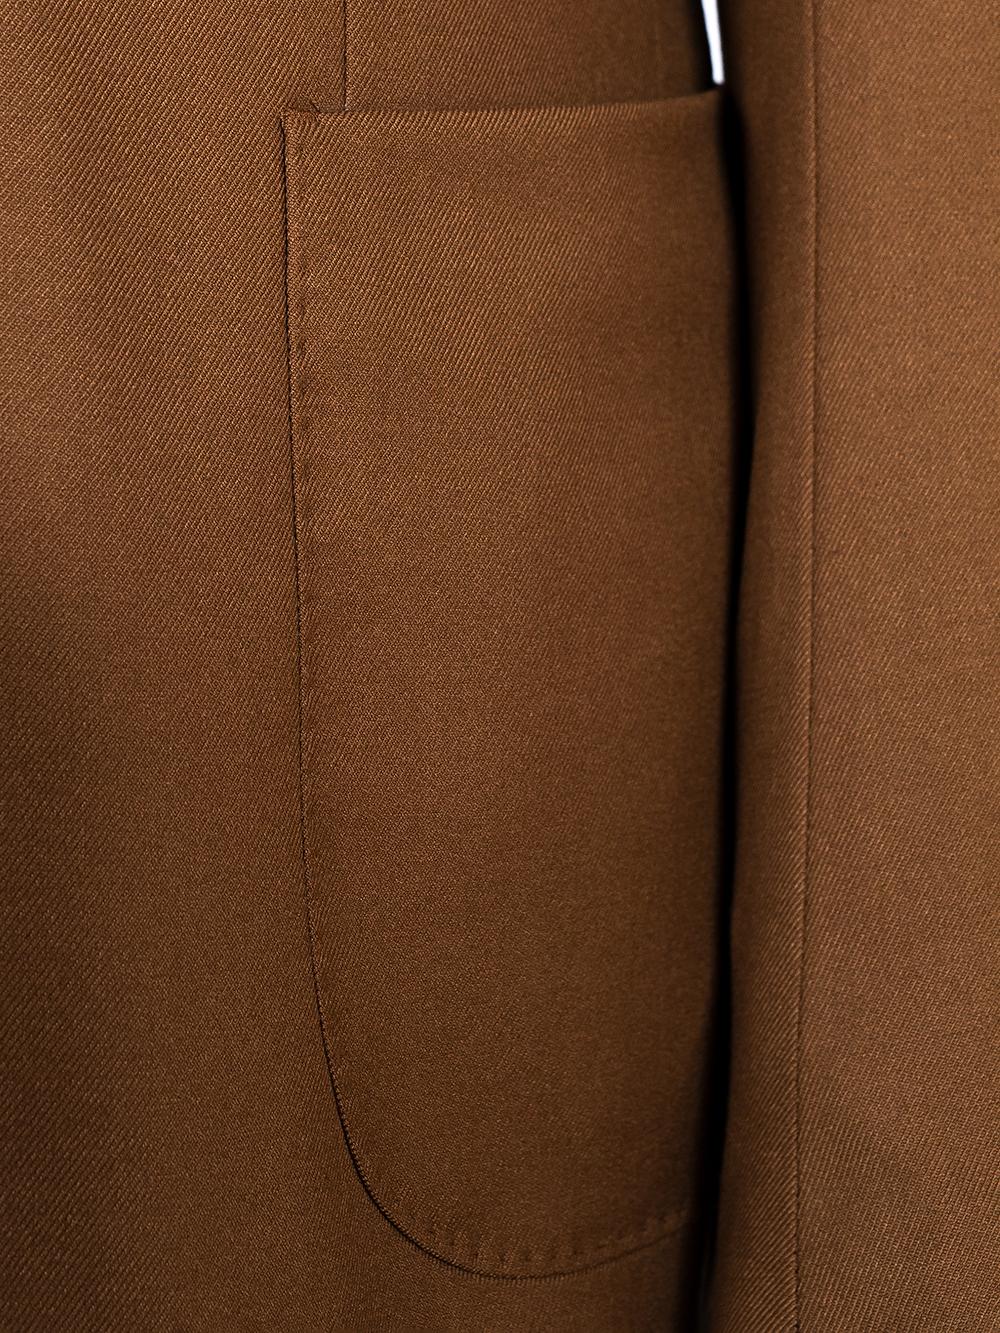 Ahmad Brown Set Blazer Linen Suit